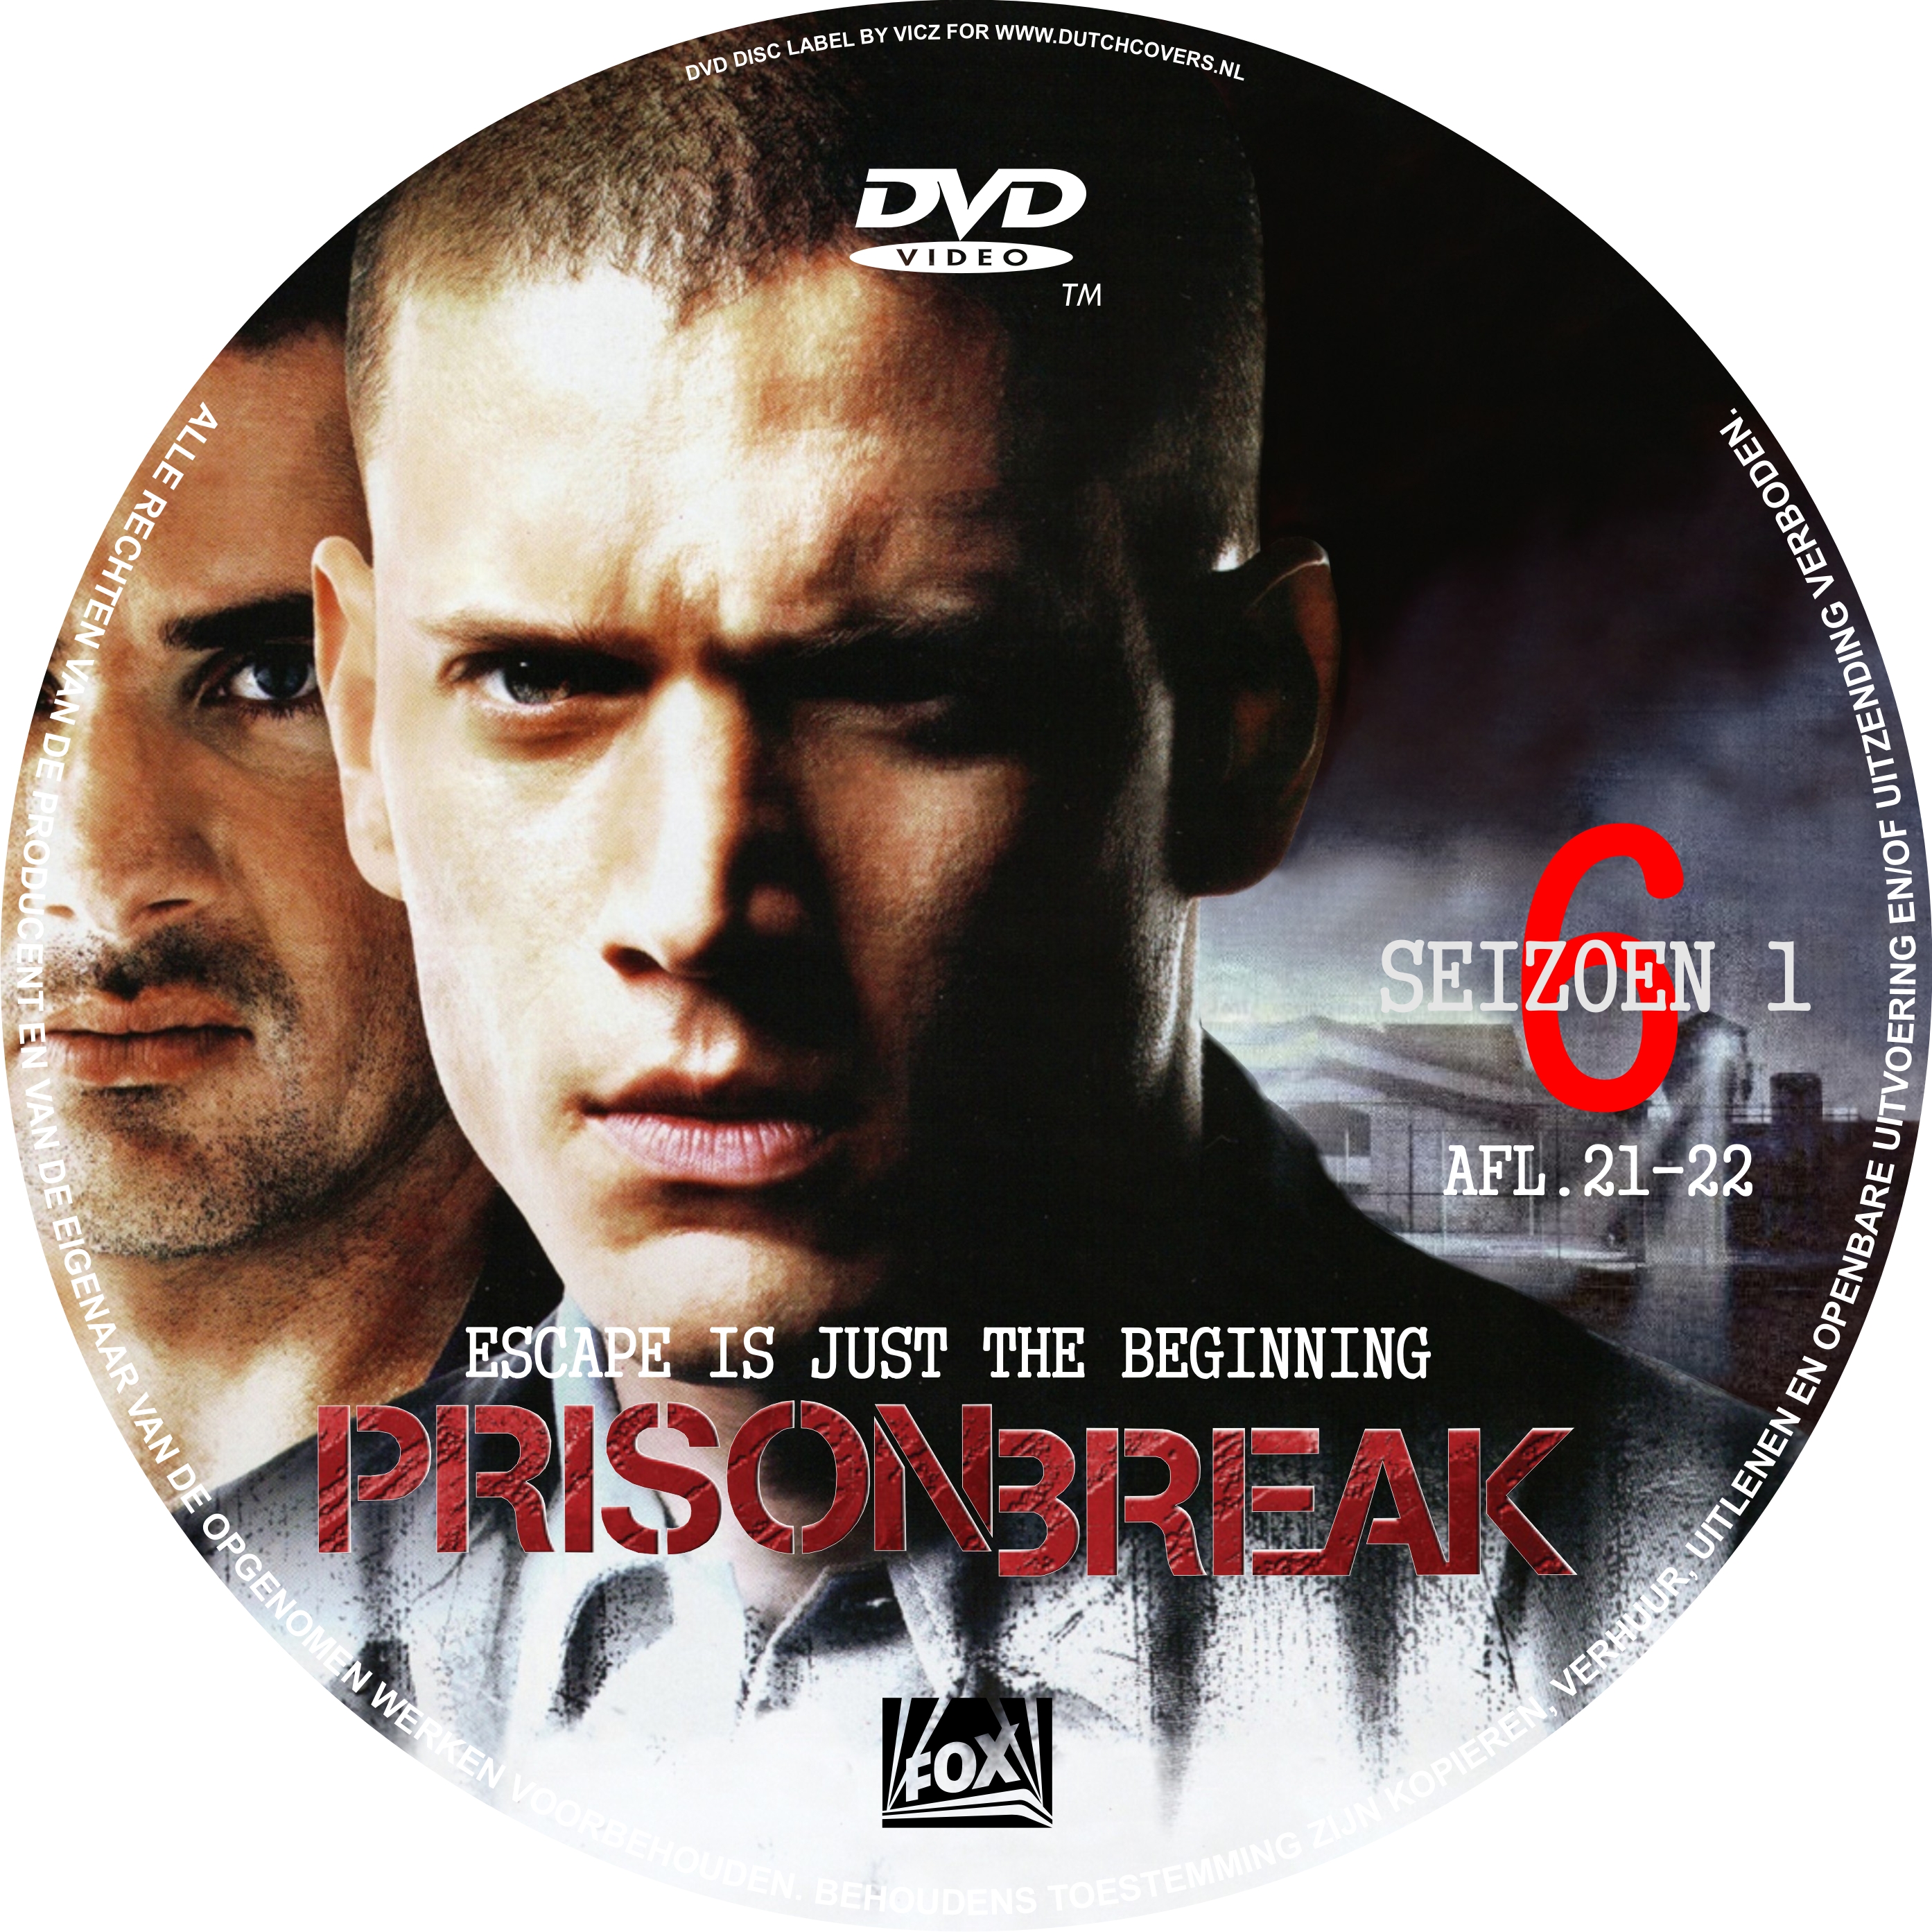 Prison Seizoen 1 dvd 6